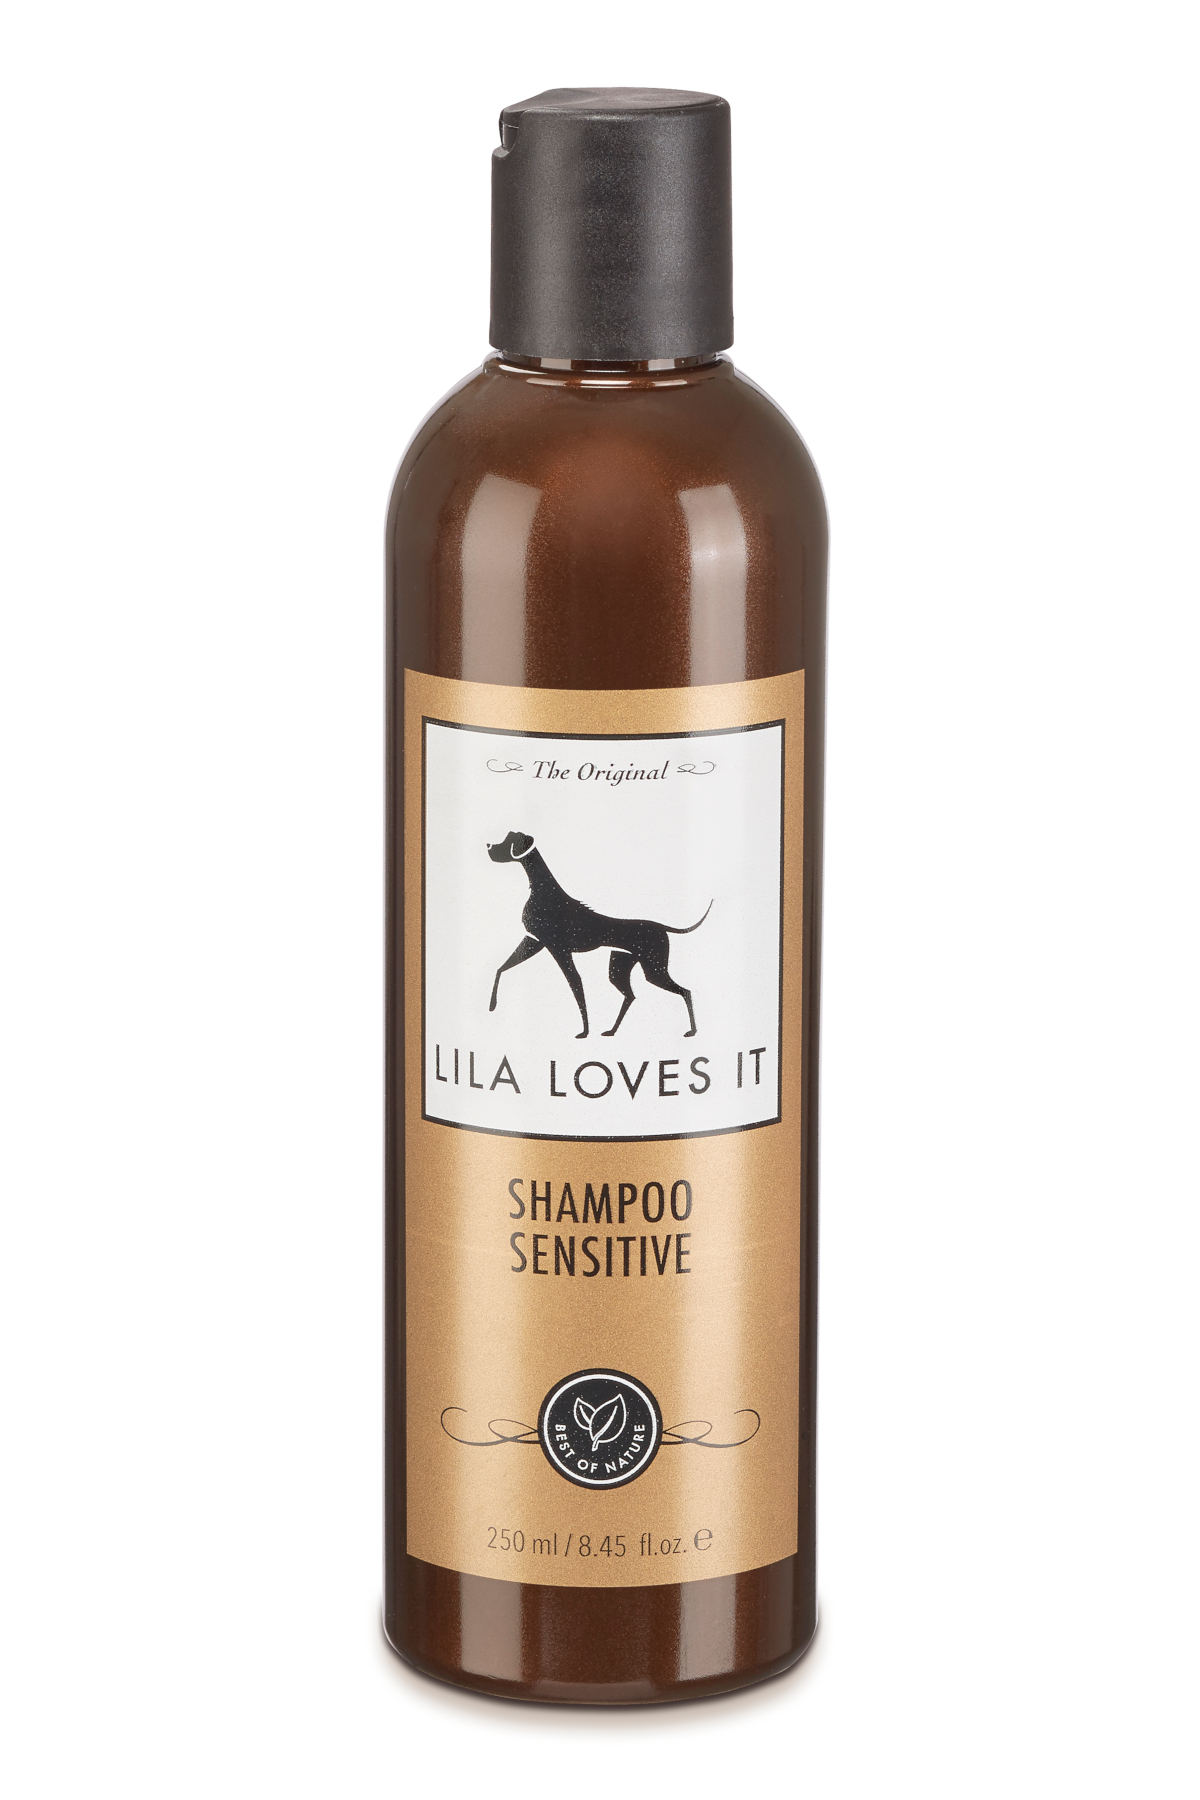 LILA LOVES IT Shampoo Sensitive